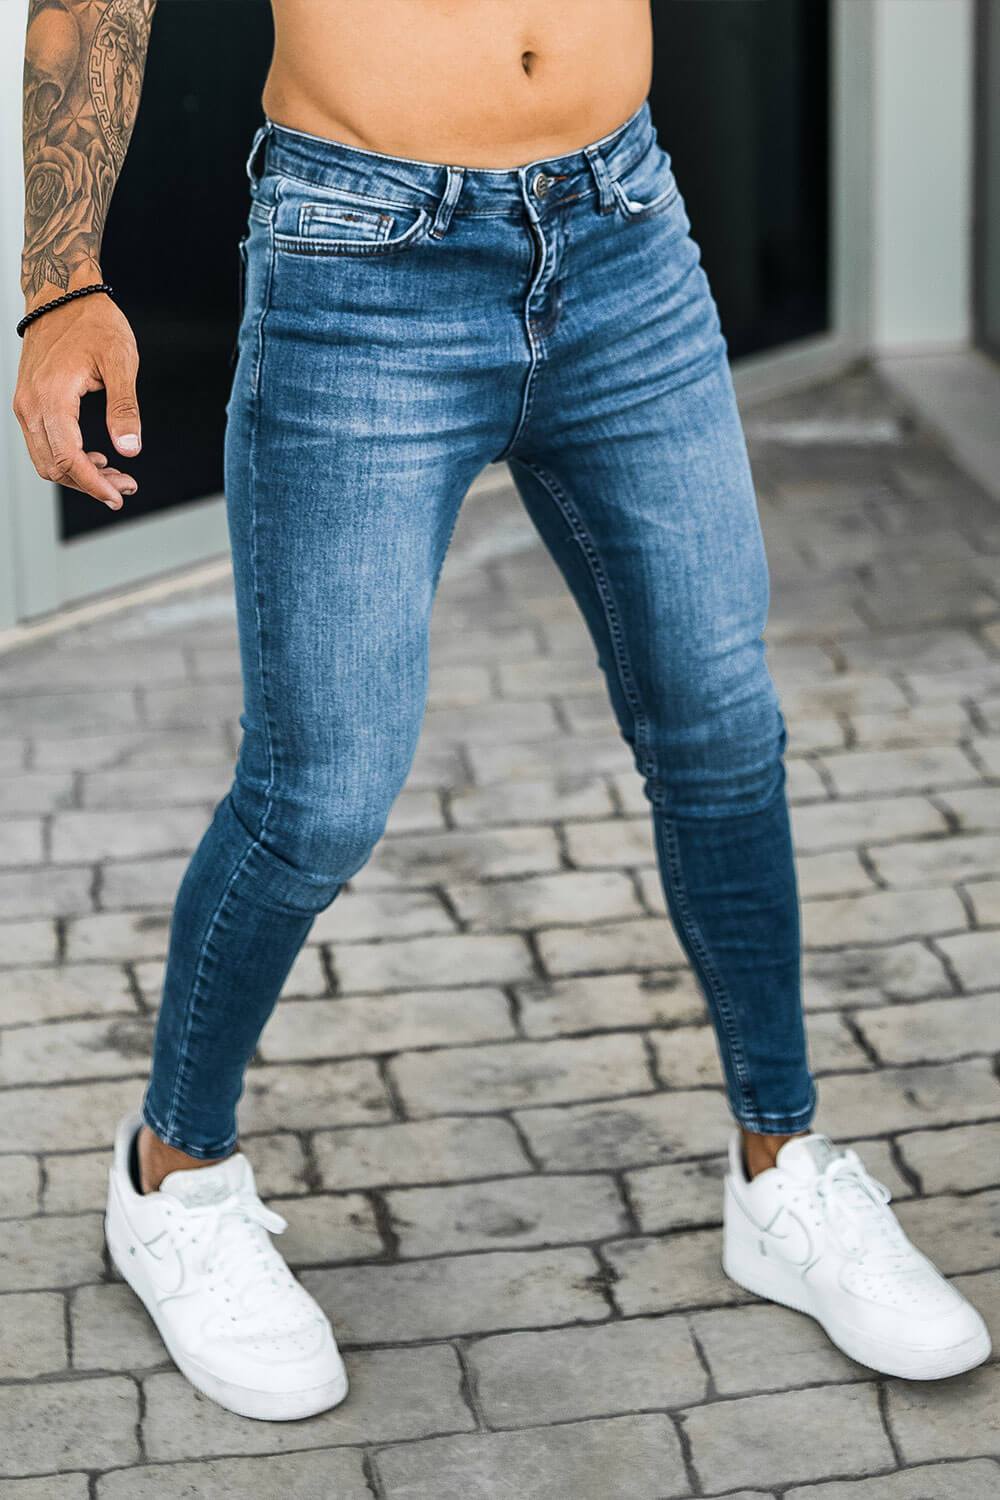 lunge kapre komme ud for 12 New Men's Spray On Super Skinny Jeans Under £50 - THE JEANS BLOG